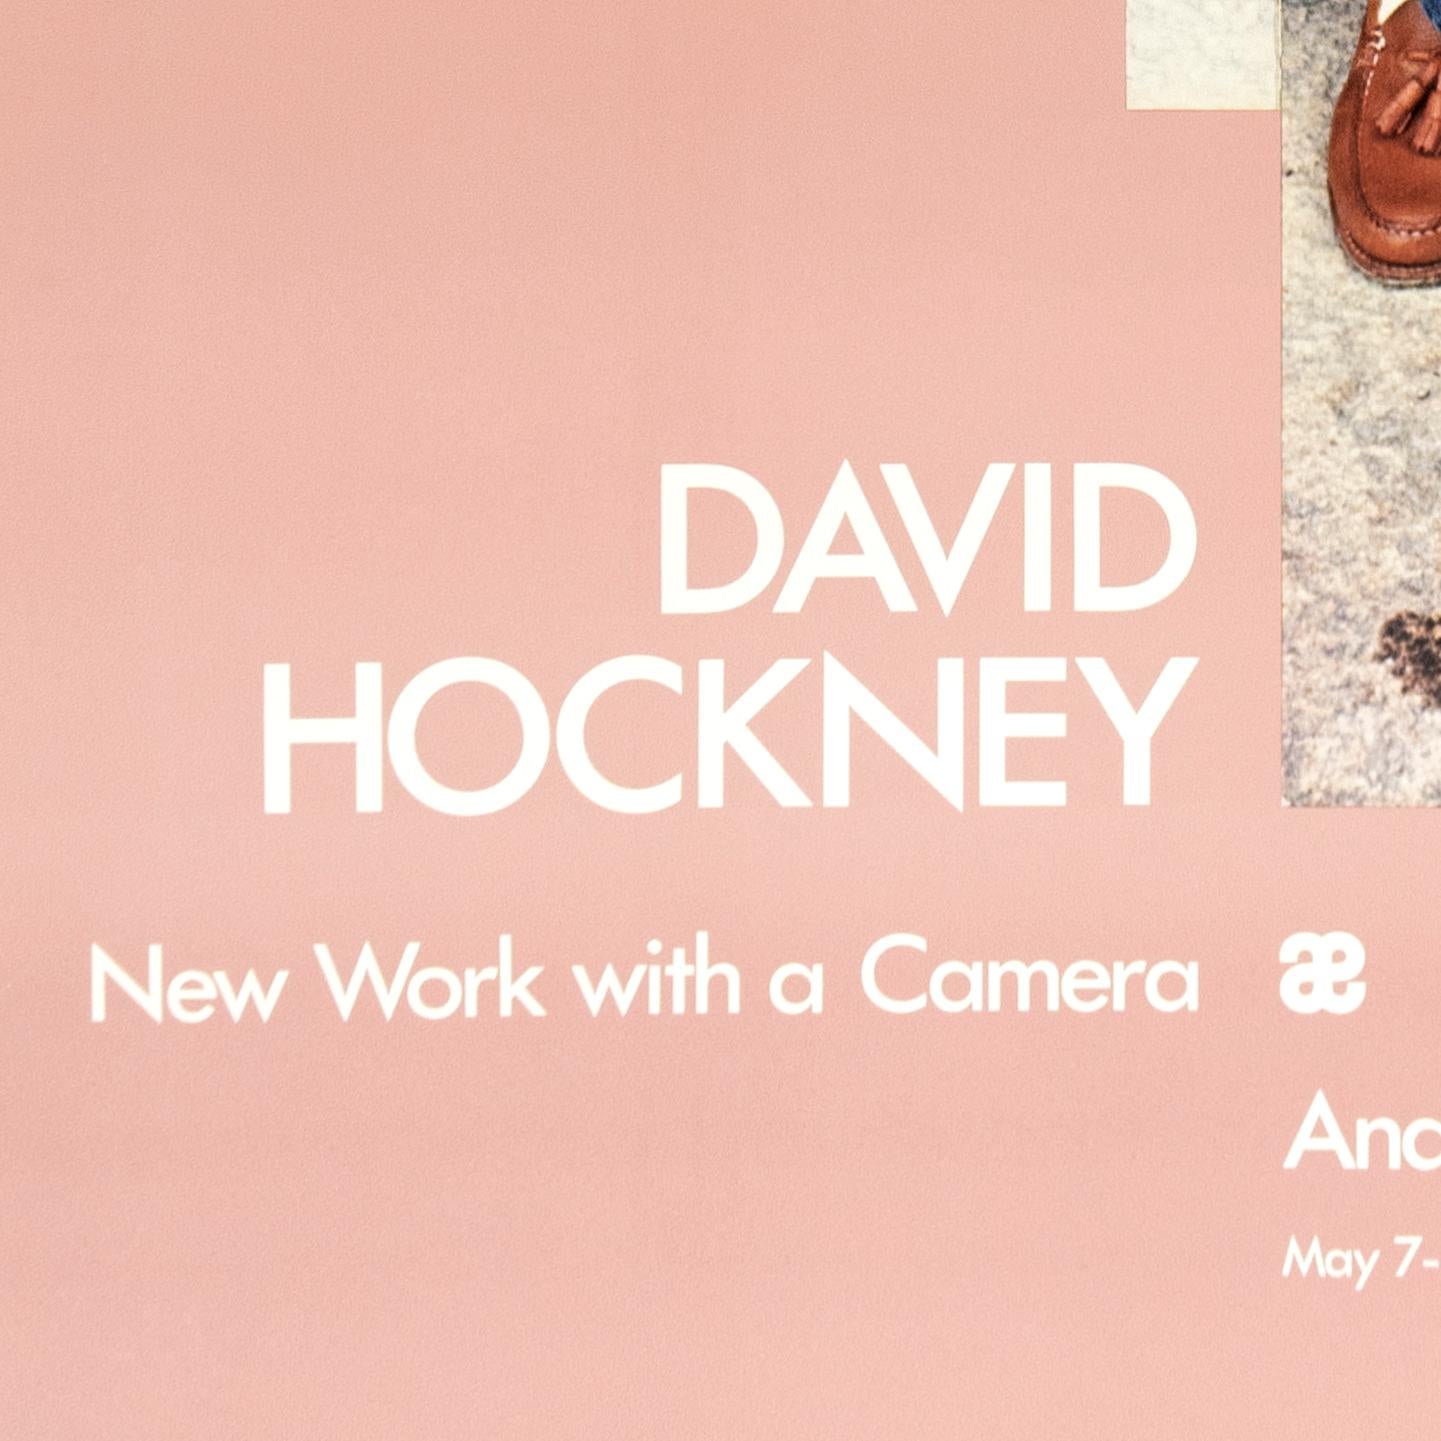 Vintage David Hockney Poster Gregory Loading His Camera 1983 in millennial pink - Beige Portrait Print by (after) David Hockney